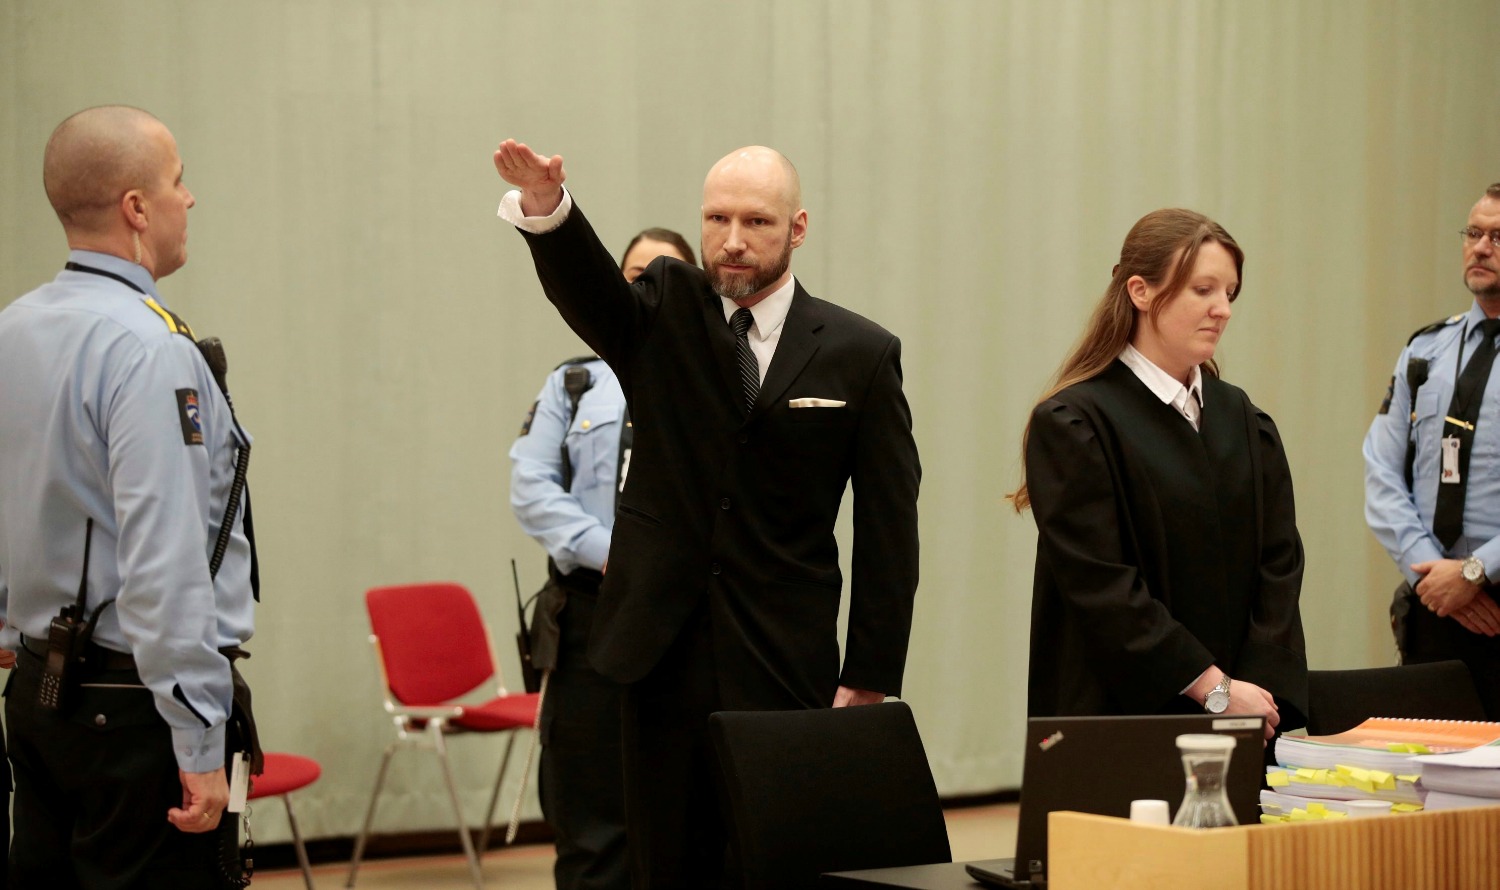 El neonazi Breivik achaca su radicalización al aislamiento en prisión